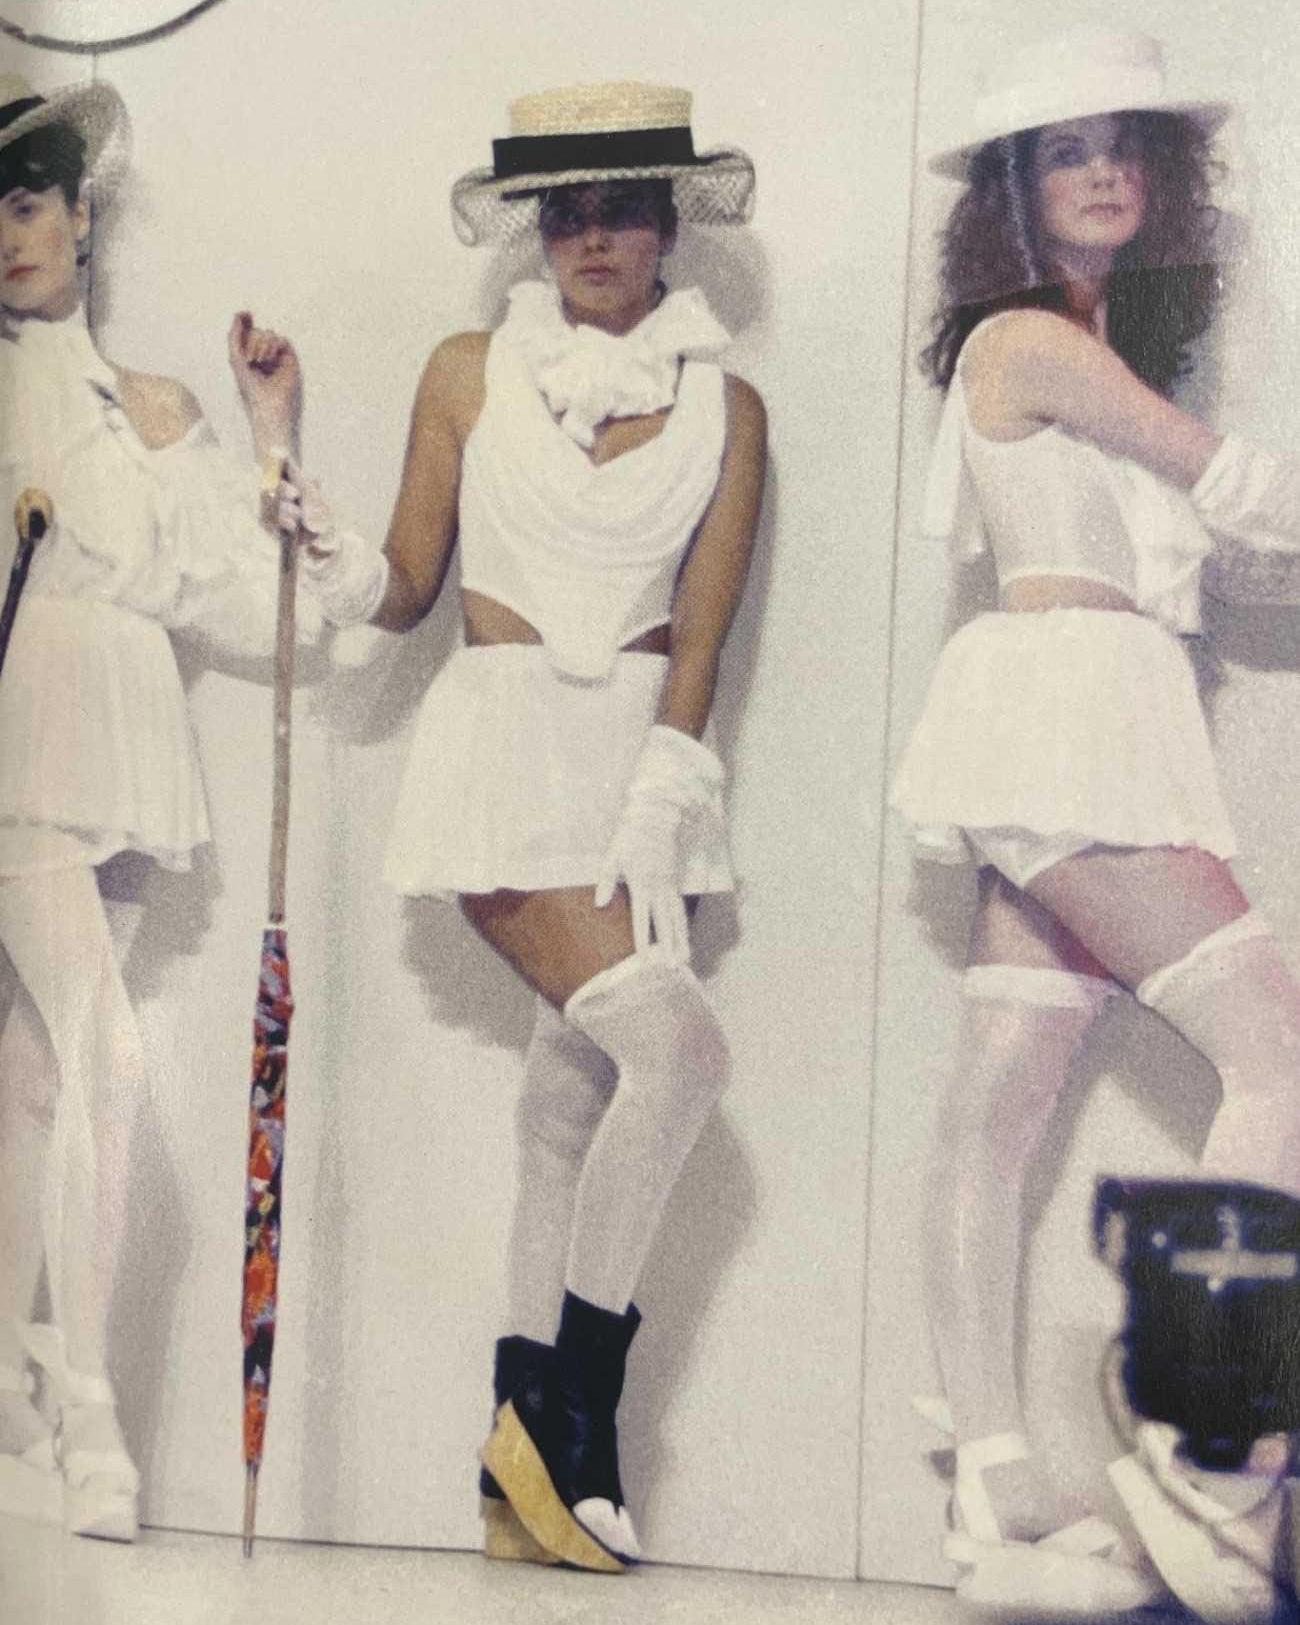 S/S 1988 Vivienne Westwood 'Britain Must Go Pagan' Collection weißer Mikro-Minirock mit abnehmbarem eingebautem Oberteil. Geraffter Minirock mit vier großen, eingearbeiteten Bustle-Pads, die mit Sicherheitsnadeln befestigt werden (auf Wunsch